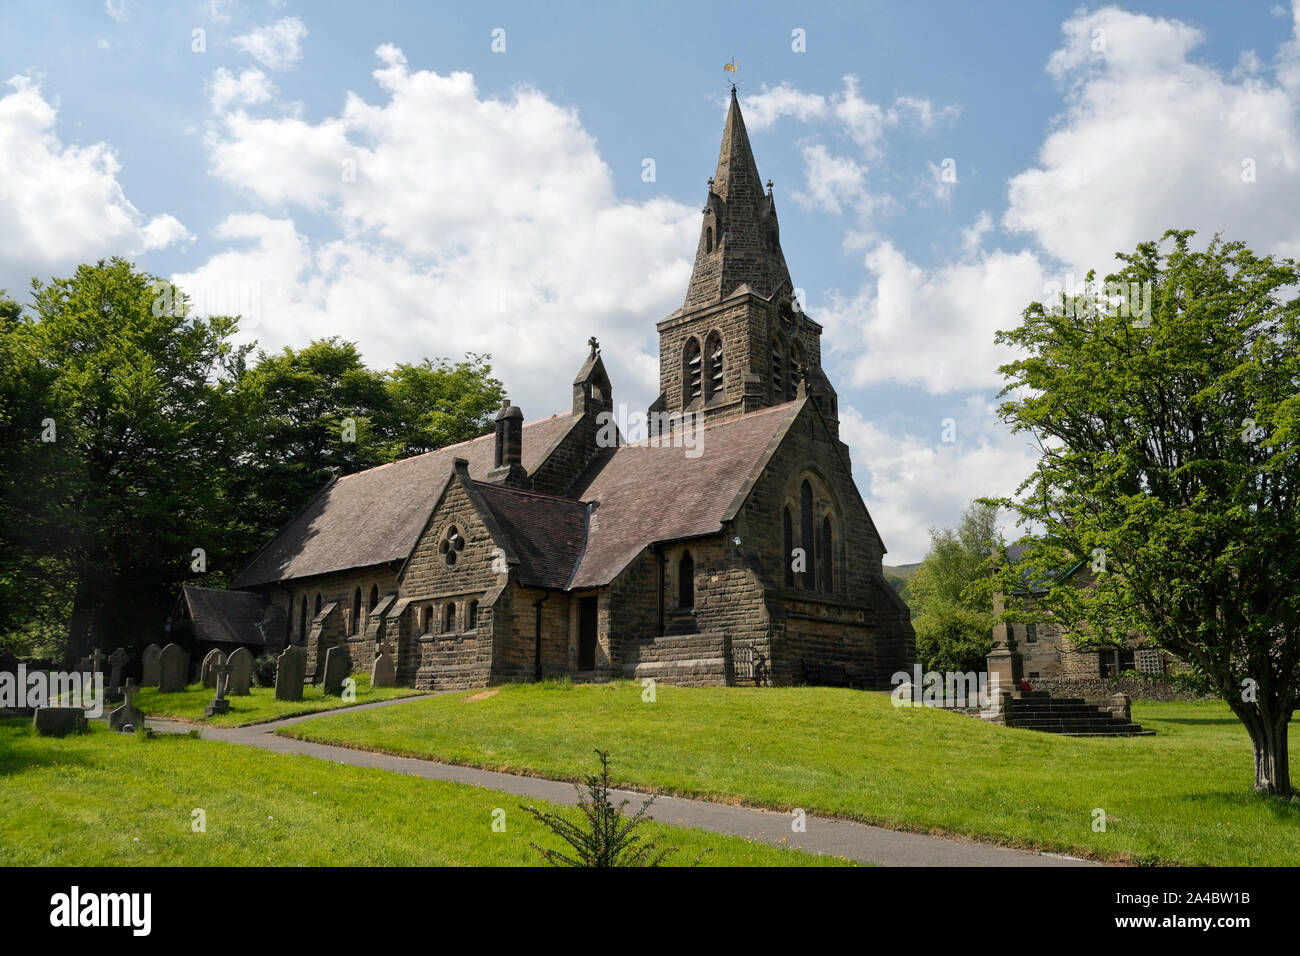 Edale Dorfkirche im Peak District Nationalpark Derbyshire England UK, Gemeindestätte der Gebetsverehrung, ländliches Kirchengebäude Stockfoto